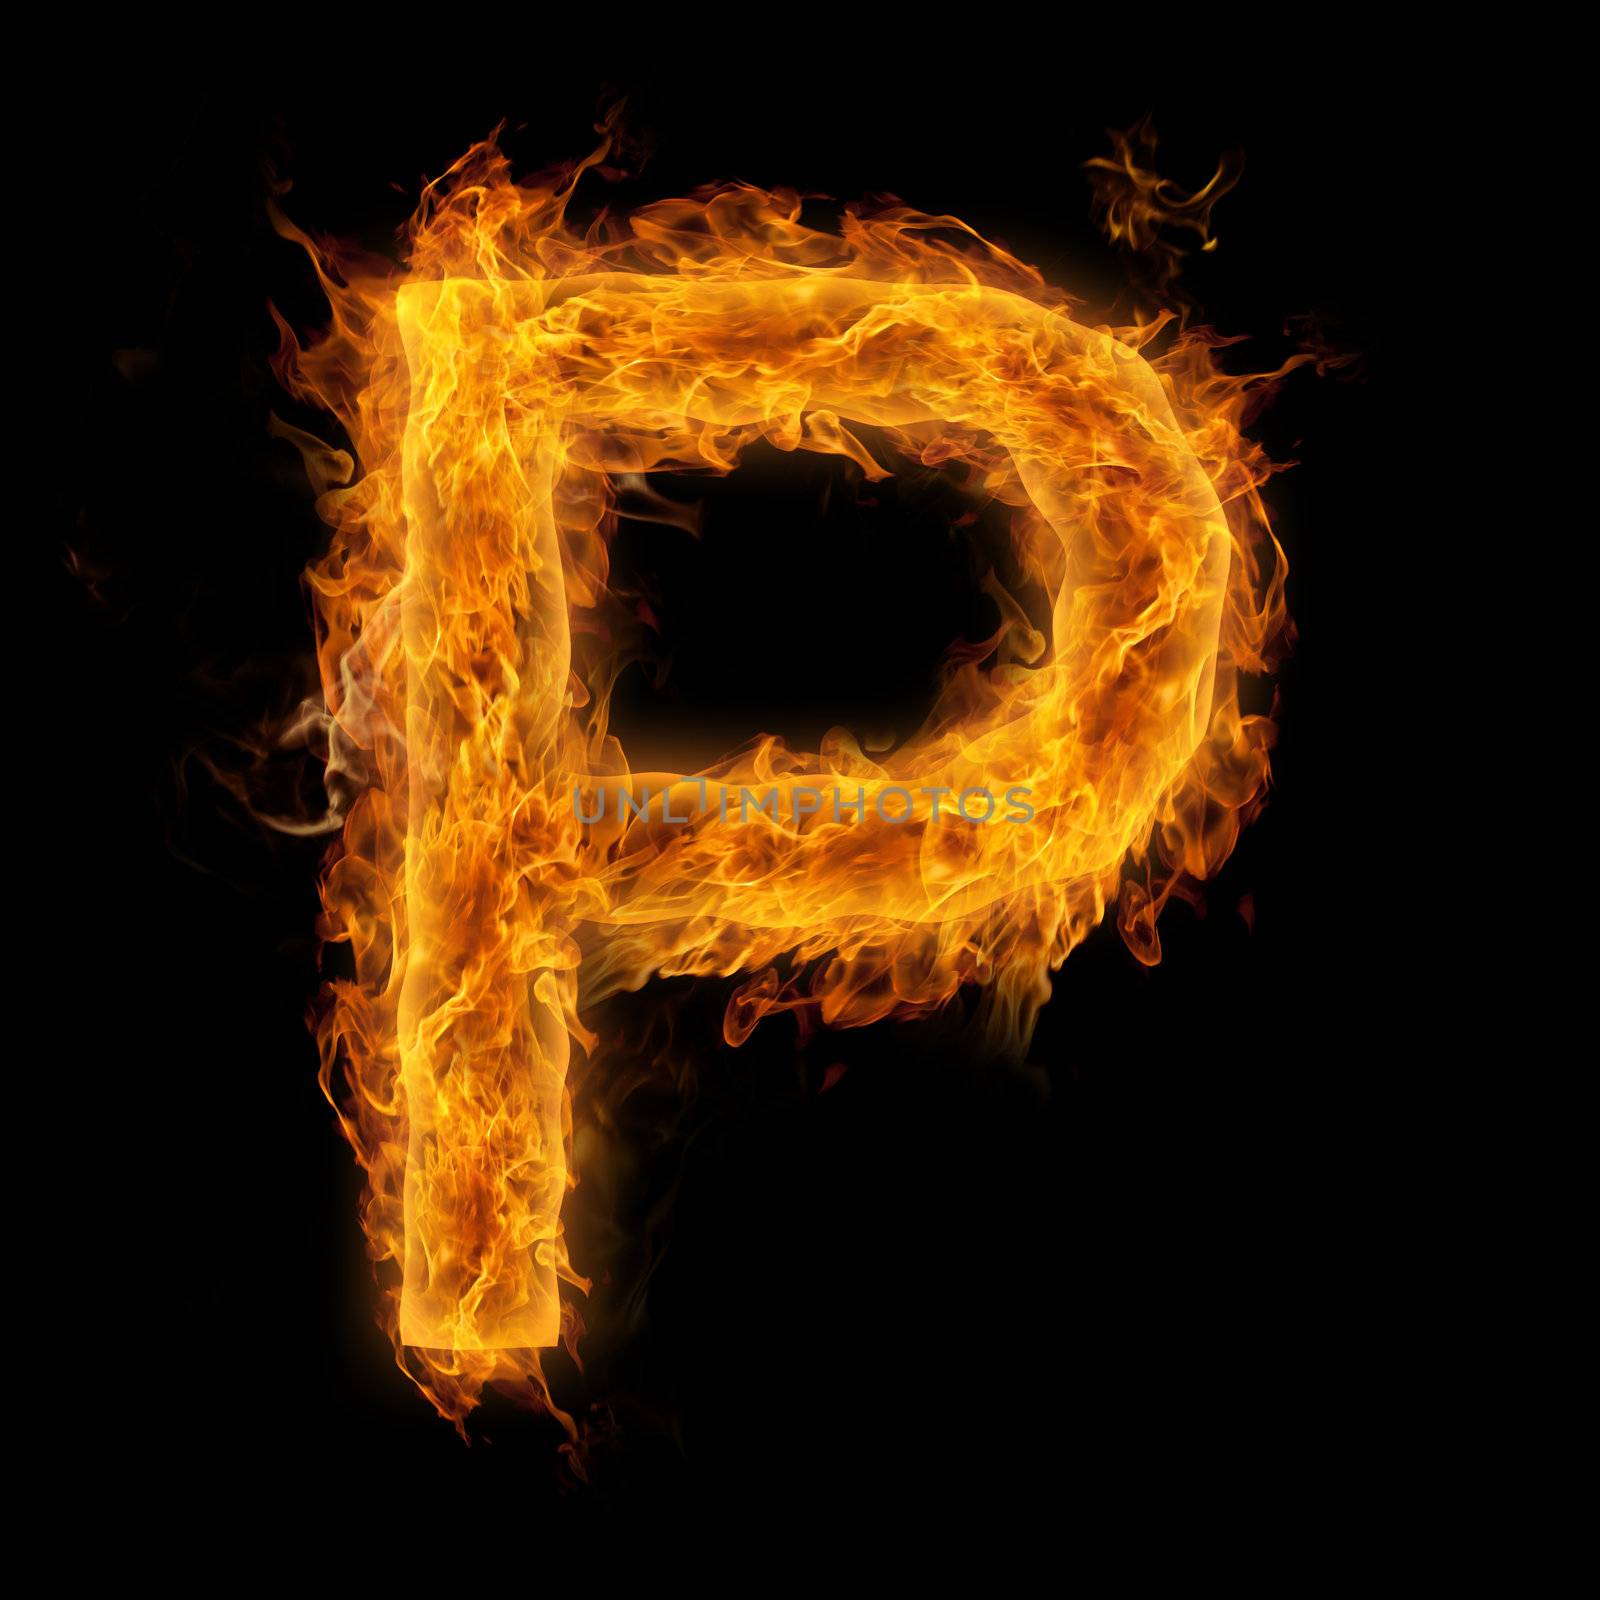 Flaming Letter P by melpomene